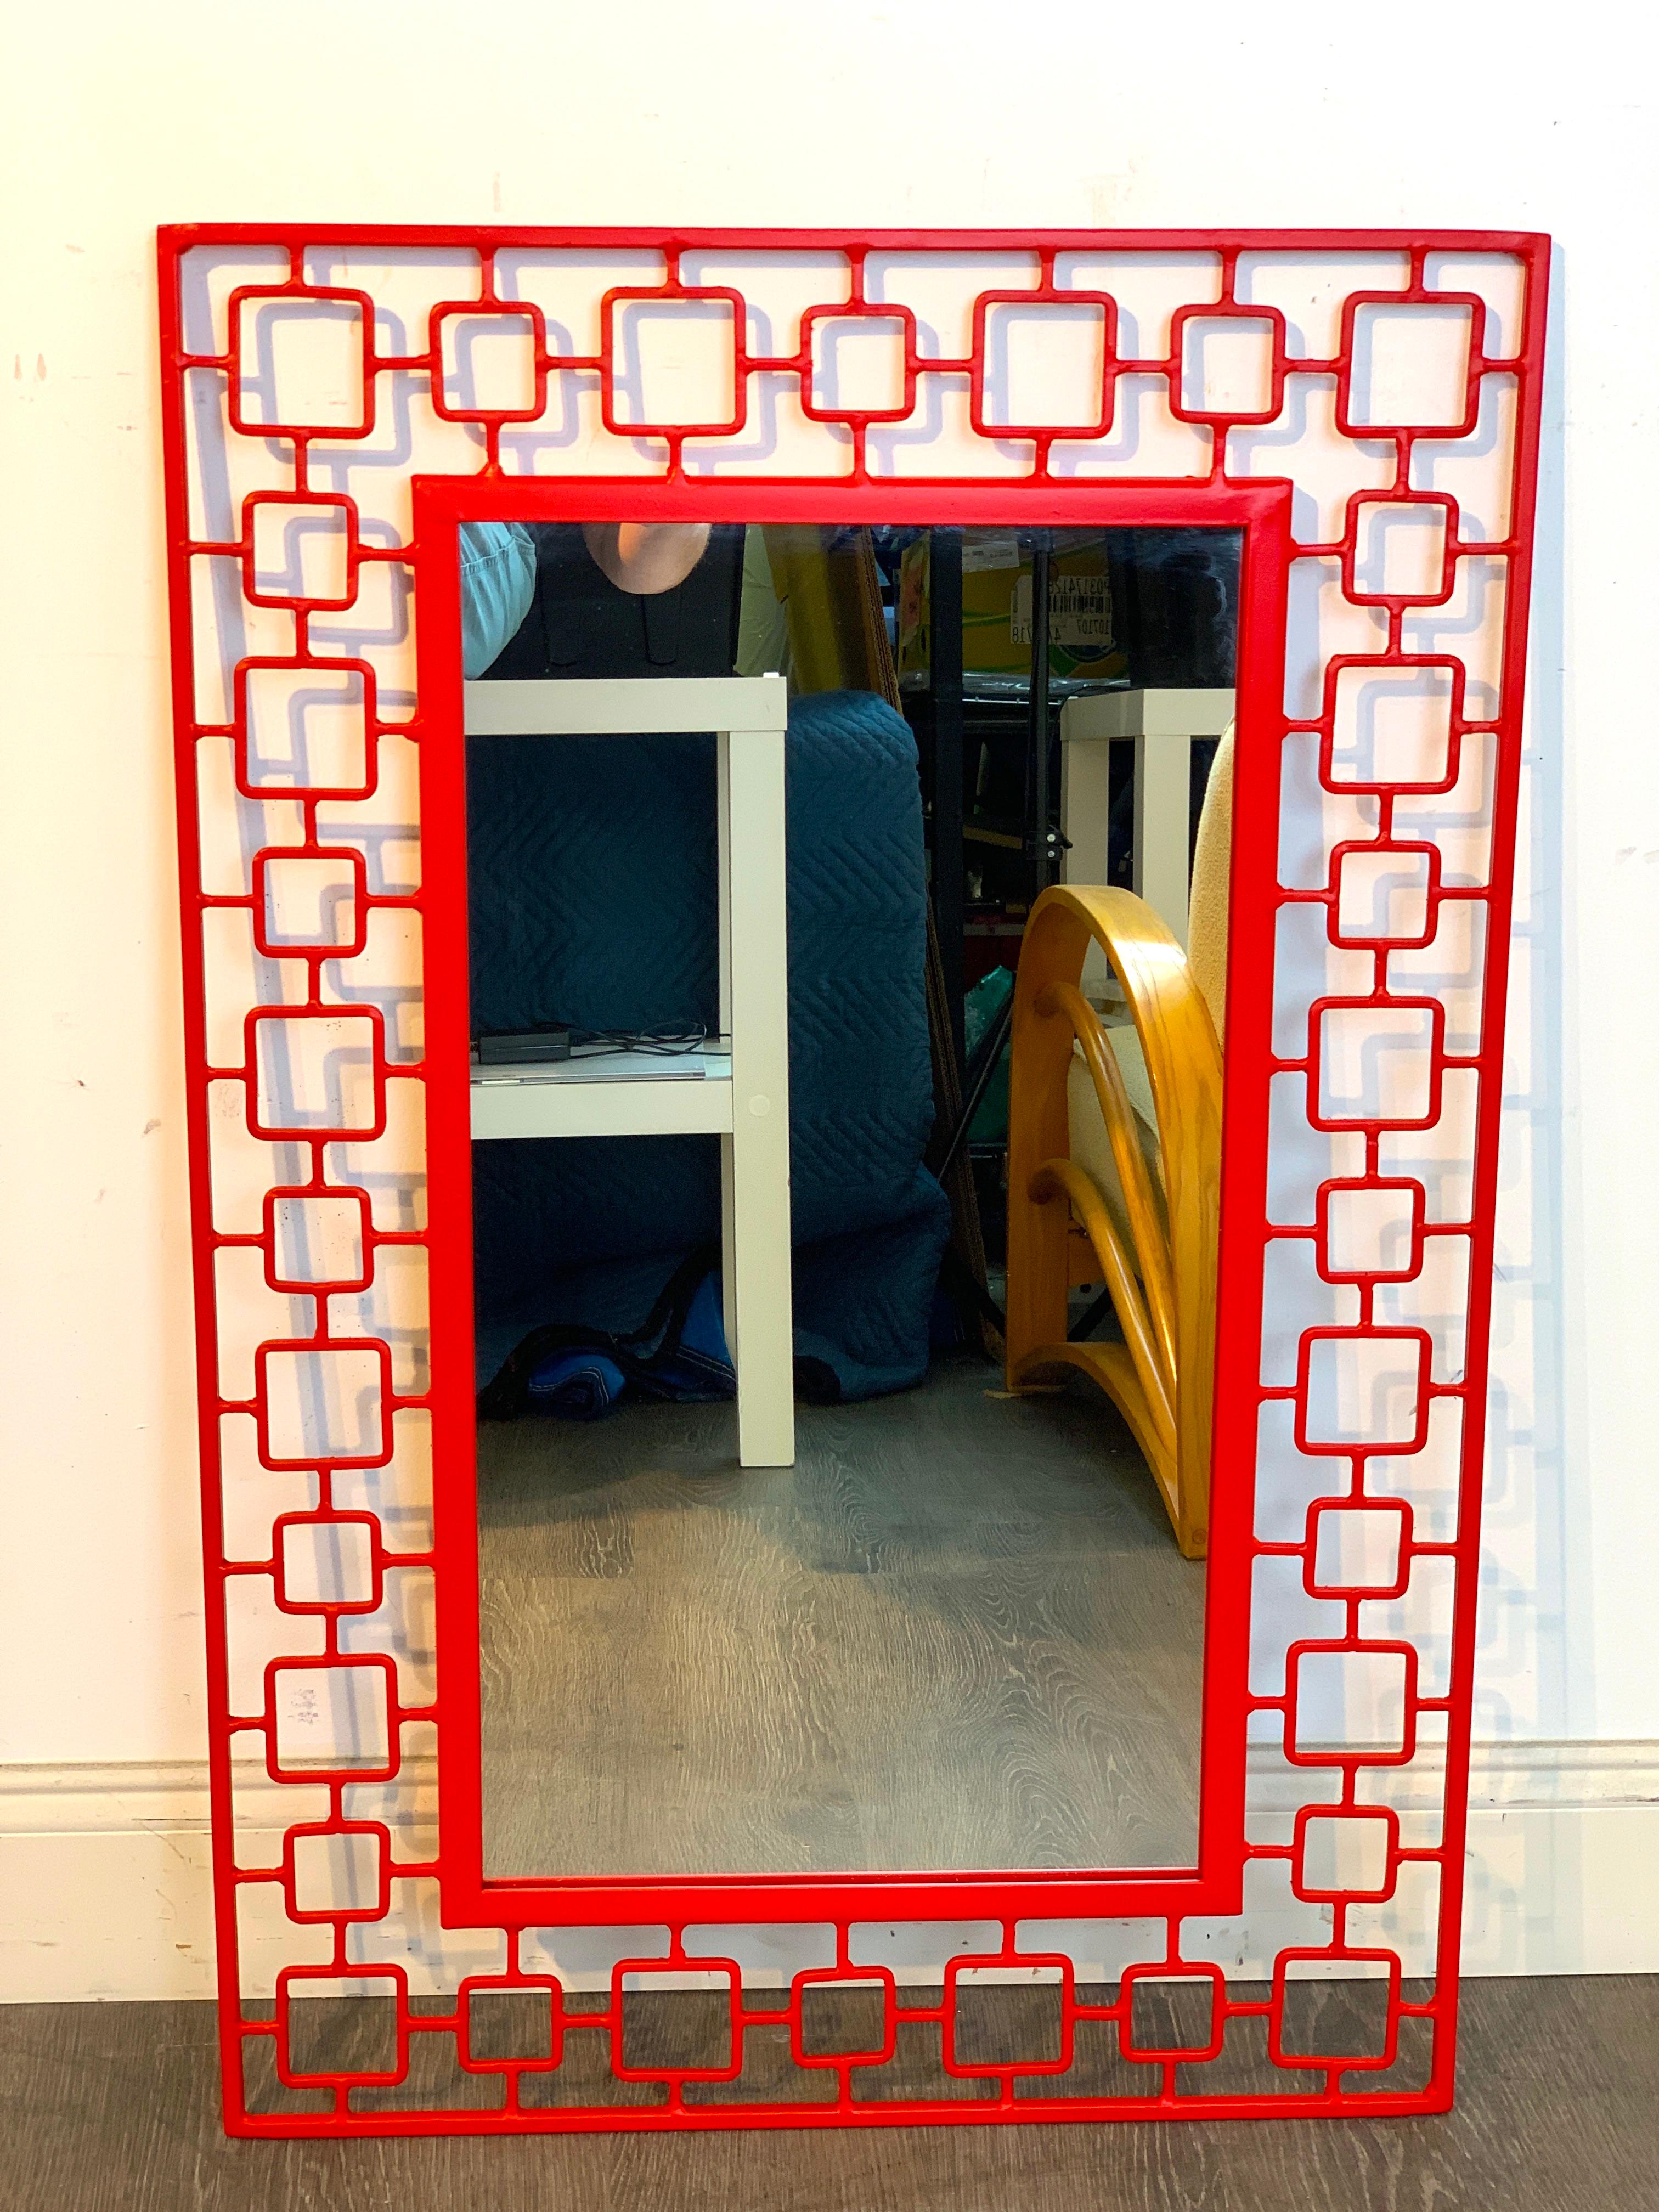 Miroir moderne en fer émaillé rouge

Ornez votre espace de vie avec opulence ; introduisez une touche de charme français dans votre maison avec ce miroir moderne en fer émaillé rouge. Placé dans un cadre en fer robuste, le miroir est entouré d'un